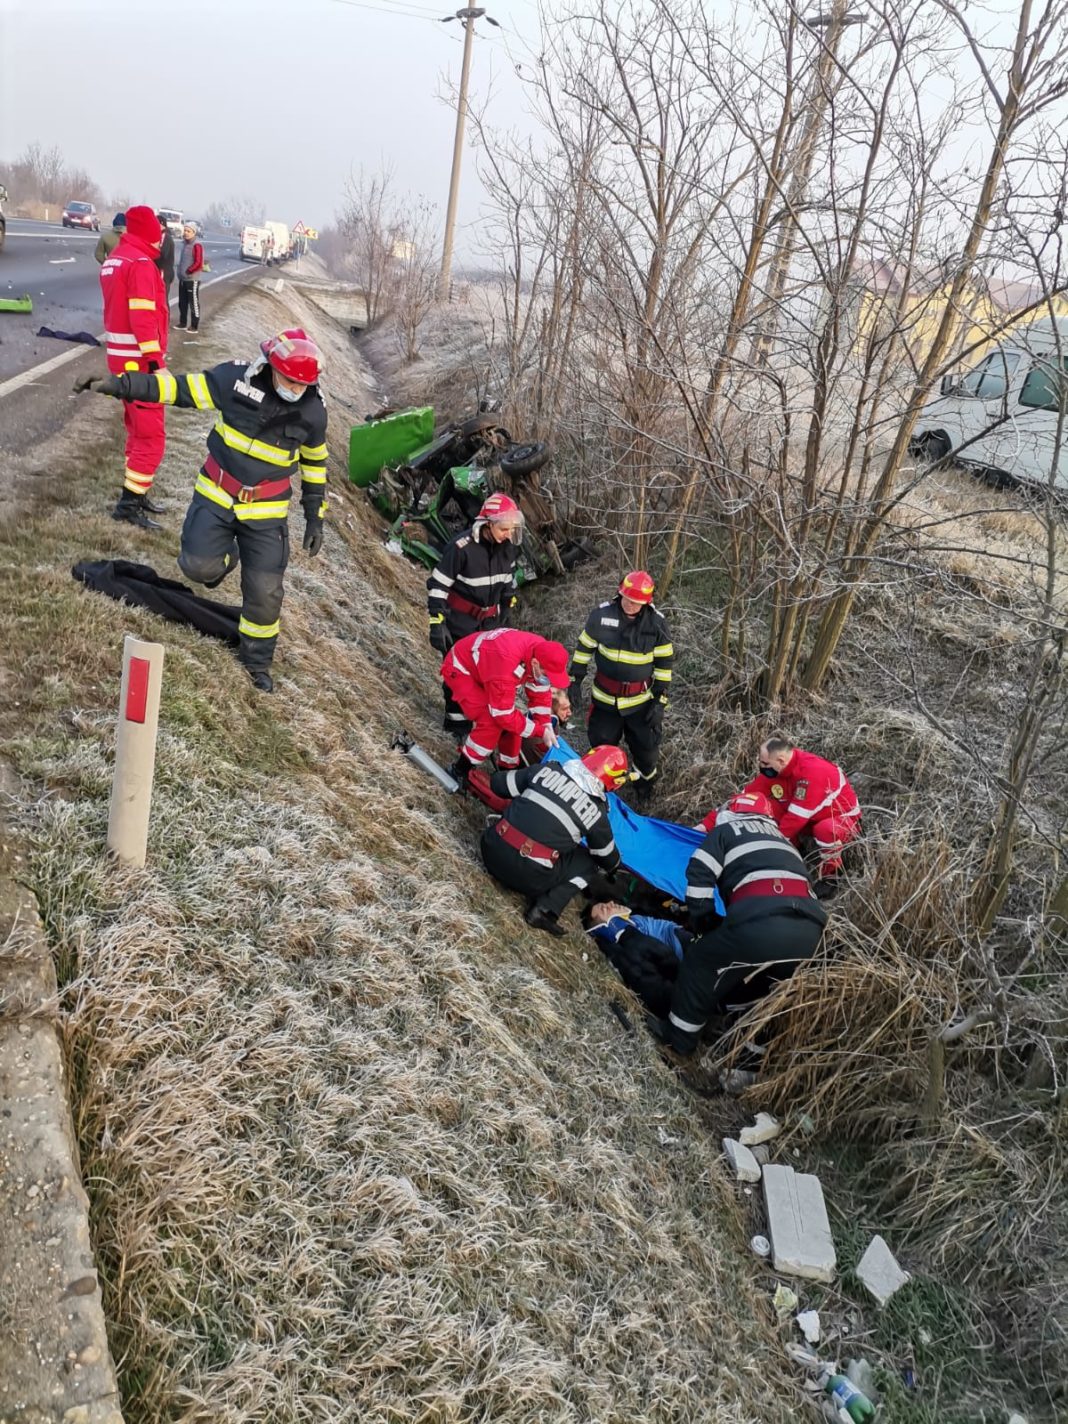 Galerie foto: Accident în comuna Ișalnița. Două persoane au ajuns la spital